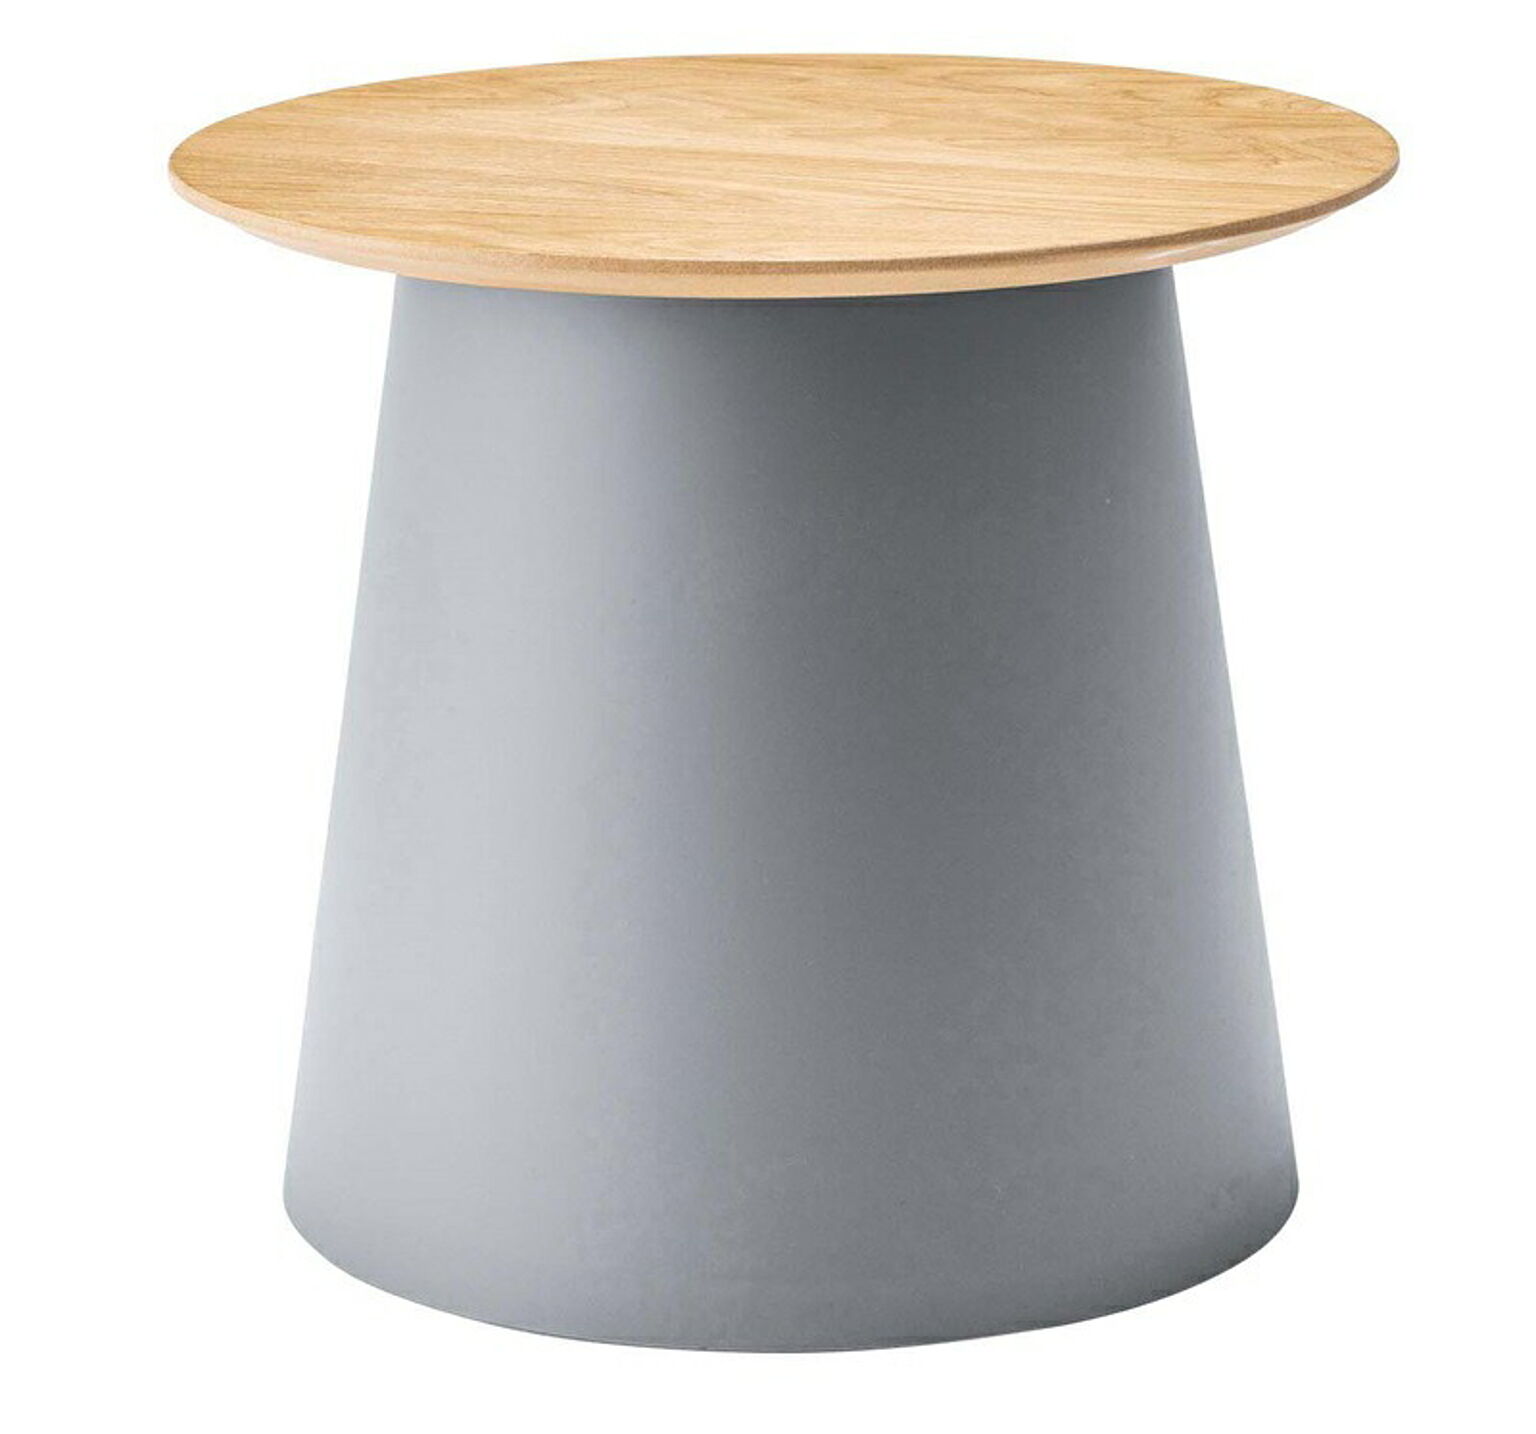 ラウンドテーブルS φ49×H42.5 ブラック テーブル ラウンドテーブル 丸 ポリプロピレン サイドテーブル センターテーブル ナイトテーブル 室内 おしゃれ ホワイト グレー シンプル 異素材